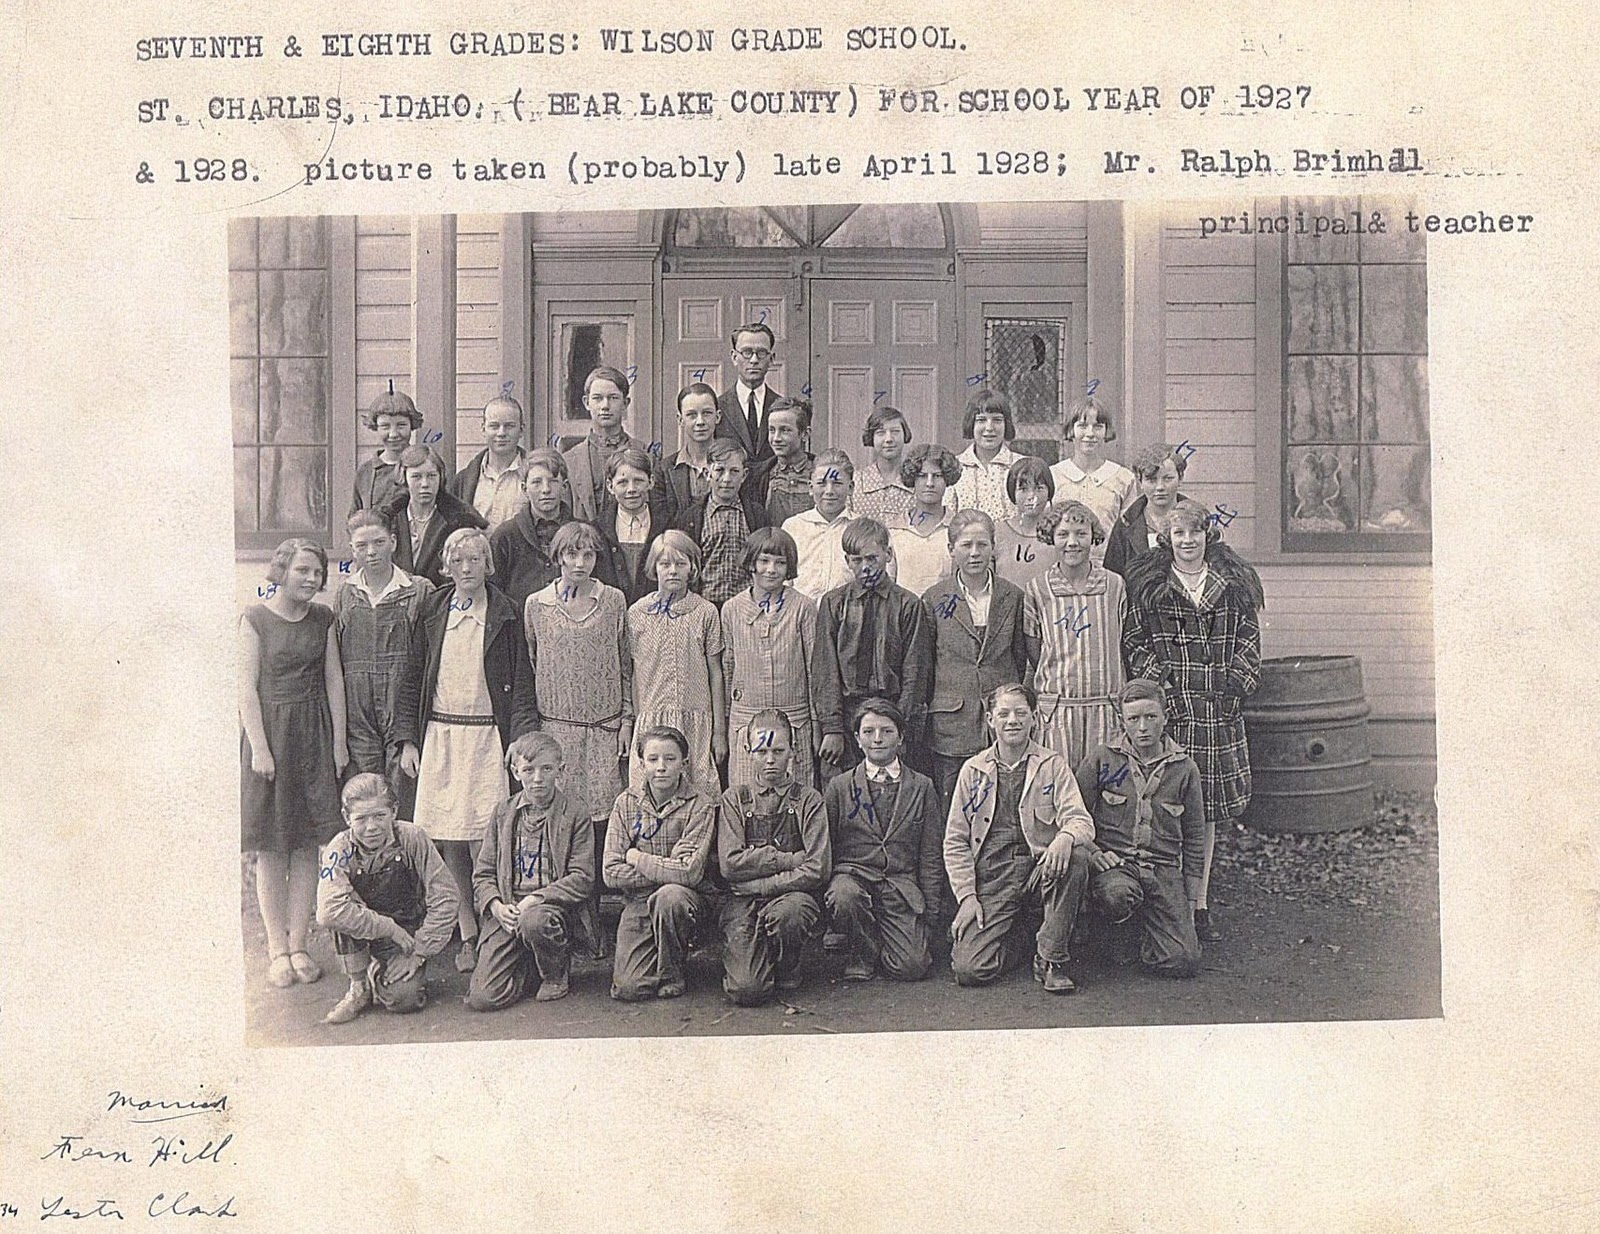 http://1.bp.blogspot.com/_HBTzhwHCh-s/TDJX7ozK1YI/AAAAAAAAAMQ/4C-ghfxE8UM/s1600/Wilson+School.St.Charles.Bear+Lake+Co.1928.jpg